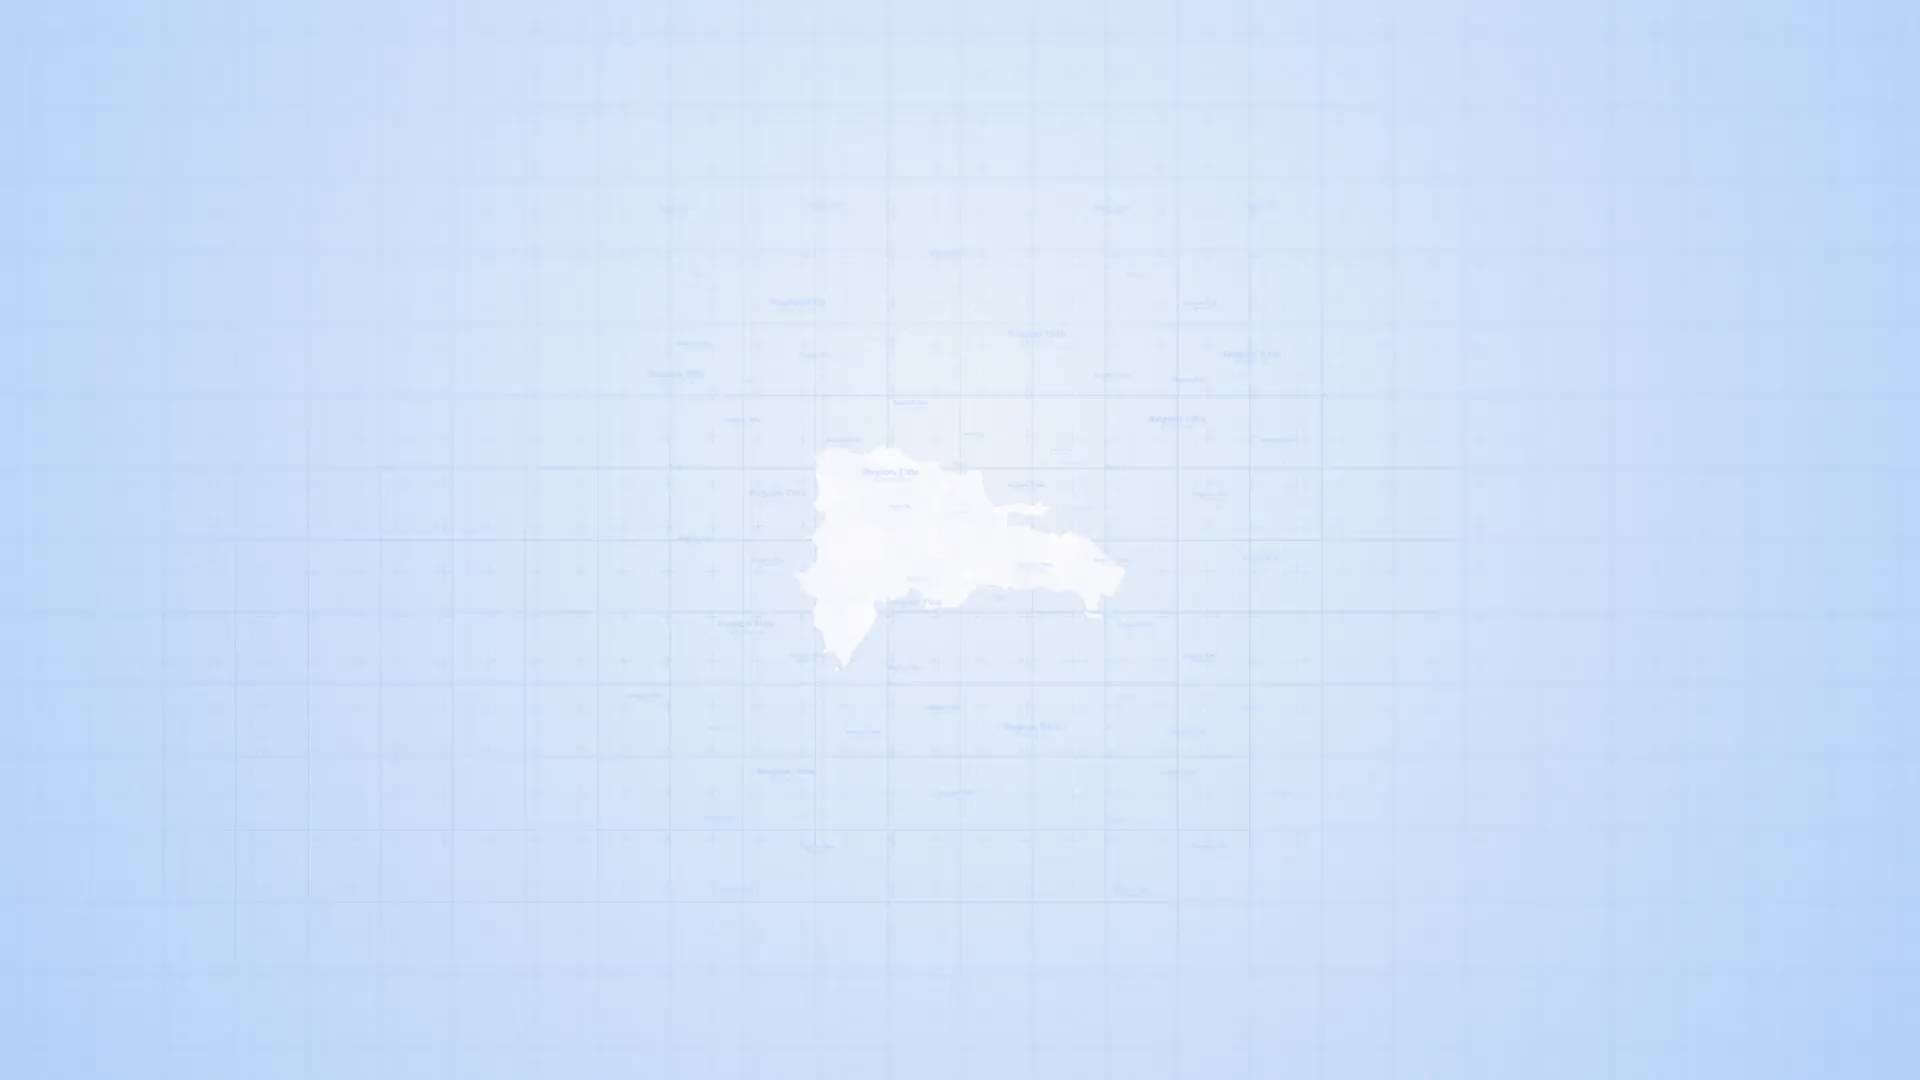 AE模板 | 多米尼加共和国旅游地图路线标记工具包动态动画展示